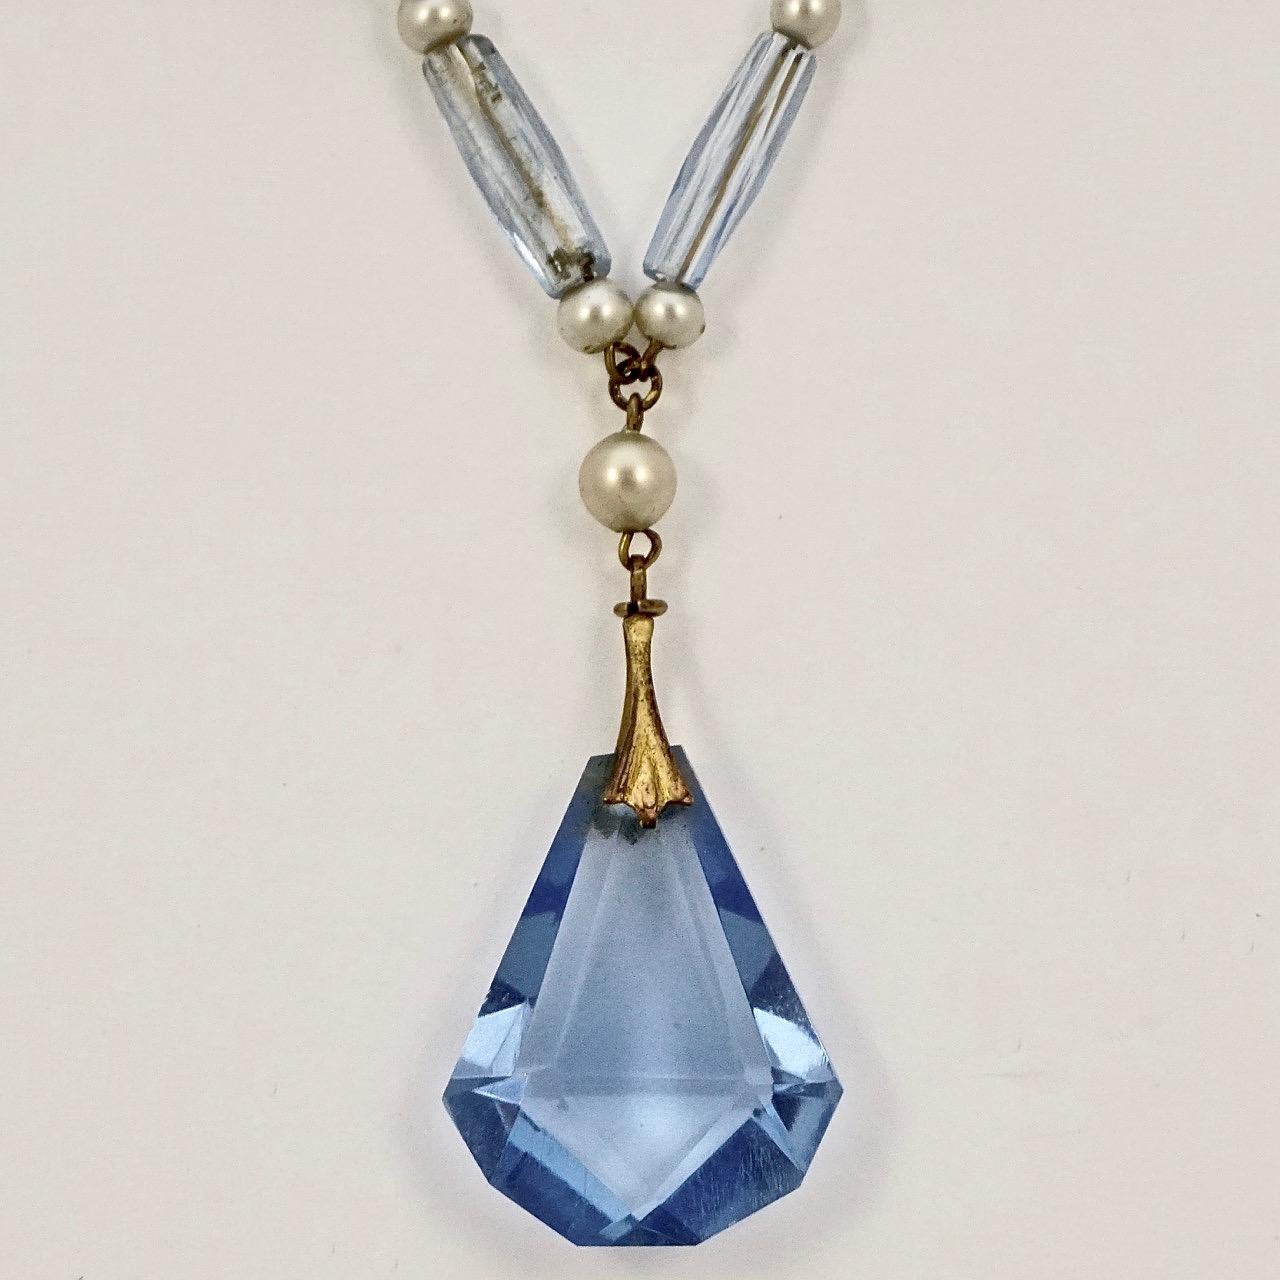 Wunderschöne goldfarbene Art-Déco-Halskette mit hell- und mittelblauen Glasperlen, Kunstperlen und einem Tropfen-Anhänger. Die Länge beträgt 41,7 cm, der Glastropfen ist 2,1 cm lang.

Dies ist eine sehr hübsche blaue Glas- und Perlenkette in einem